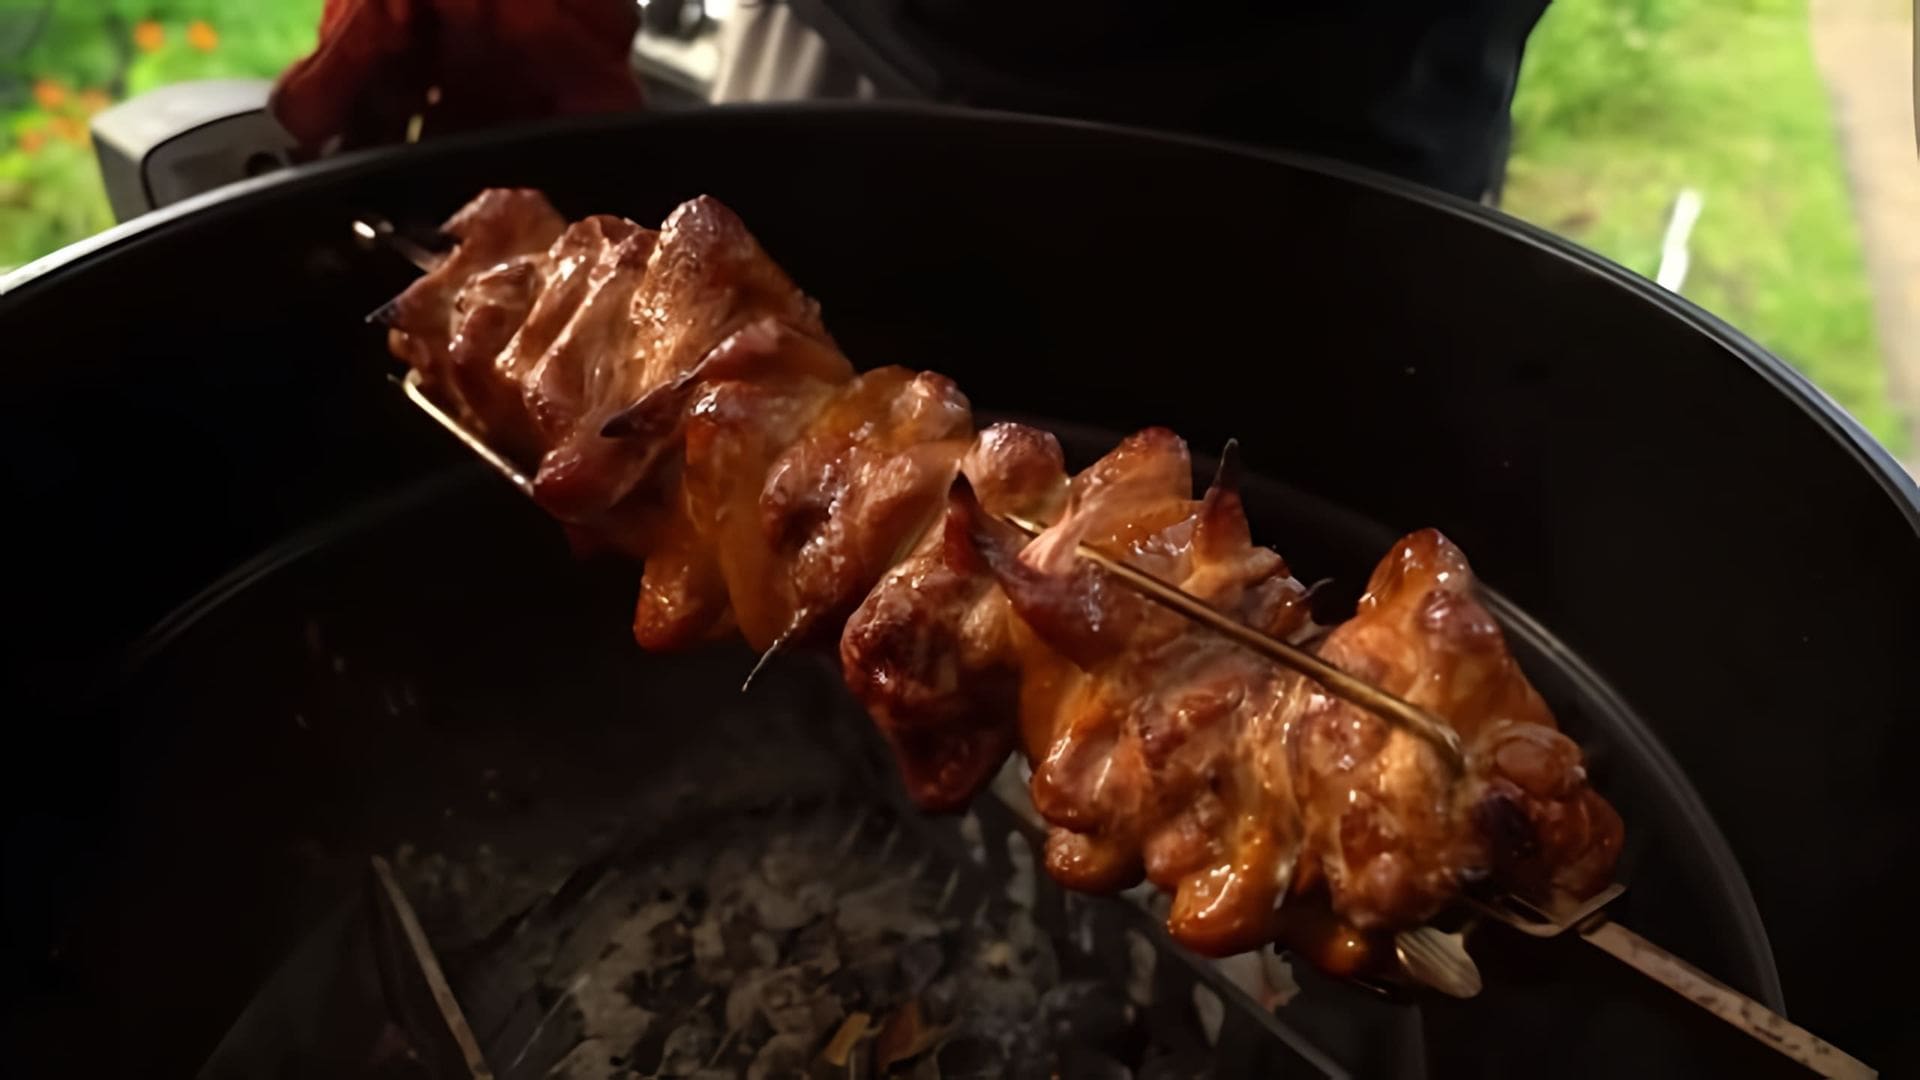 В этом видео демонстрируется рецепт маринада для куриных крыльев, который включает в себя соевый соус, чеснок, имбирь и мед